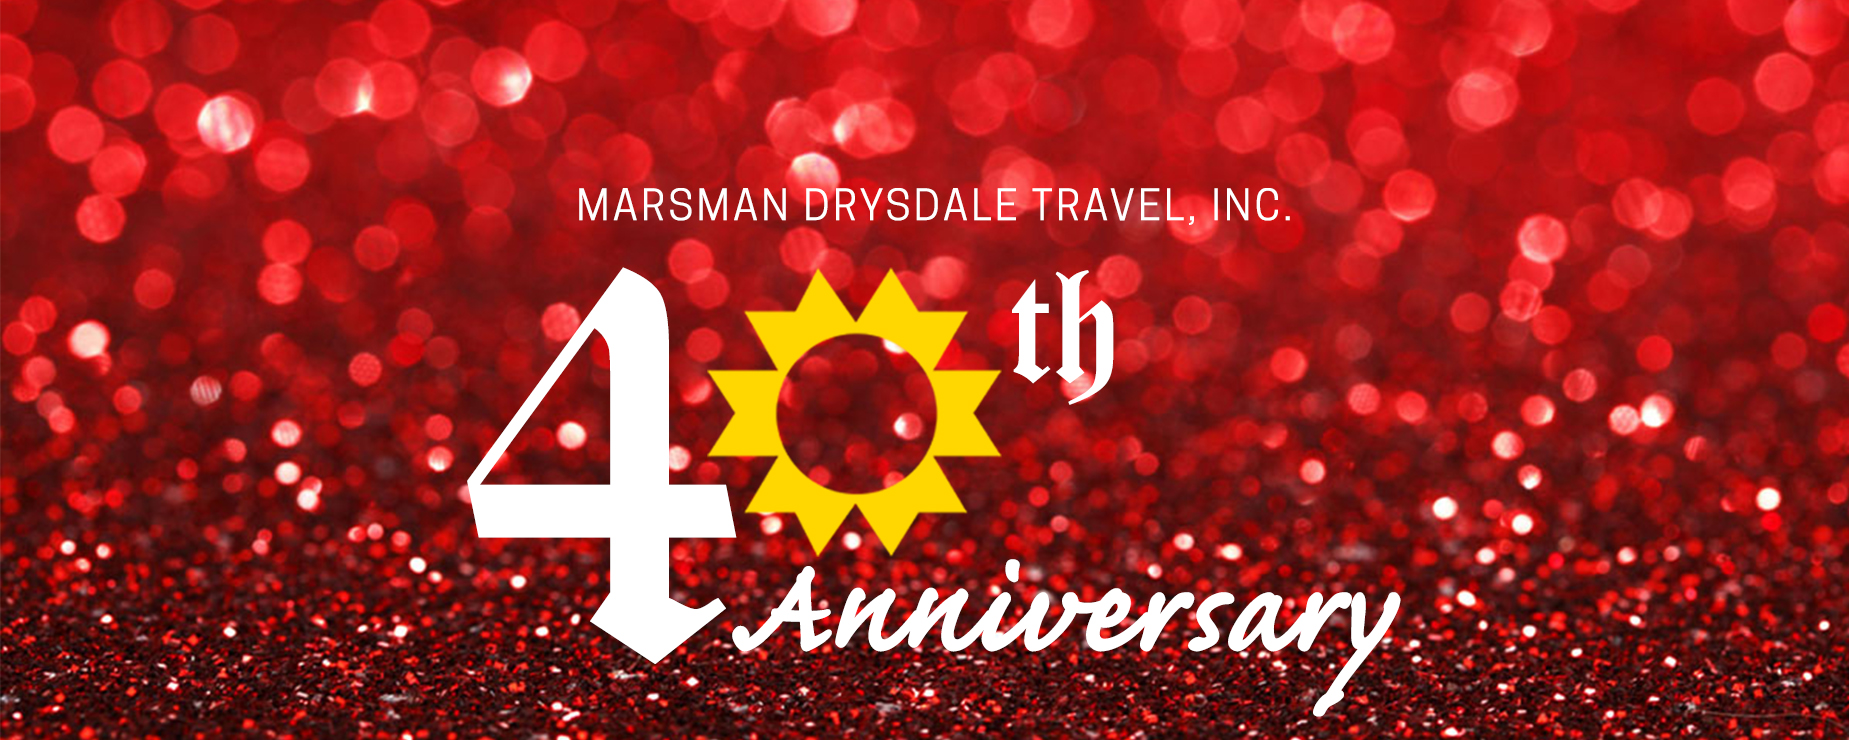 marsman drysdale travel awards